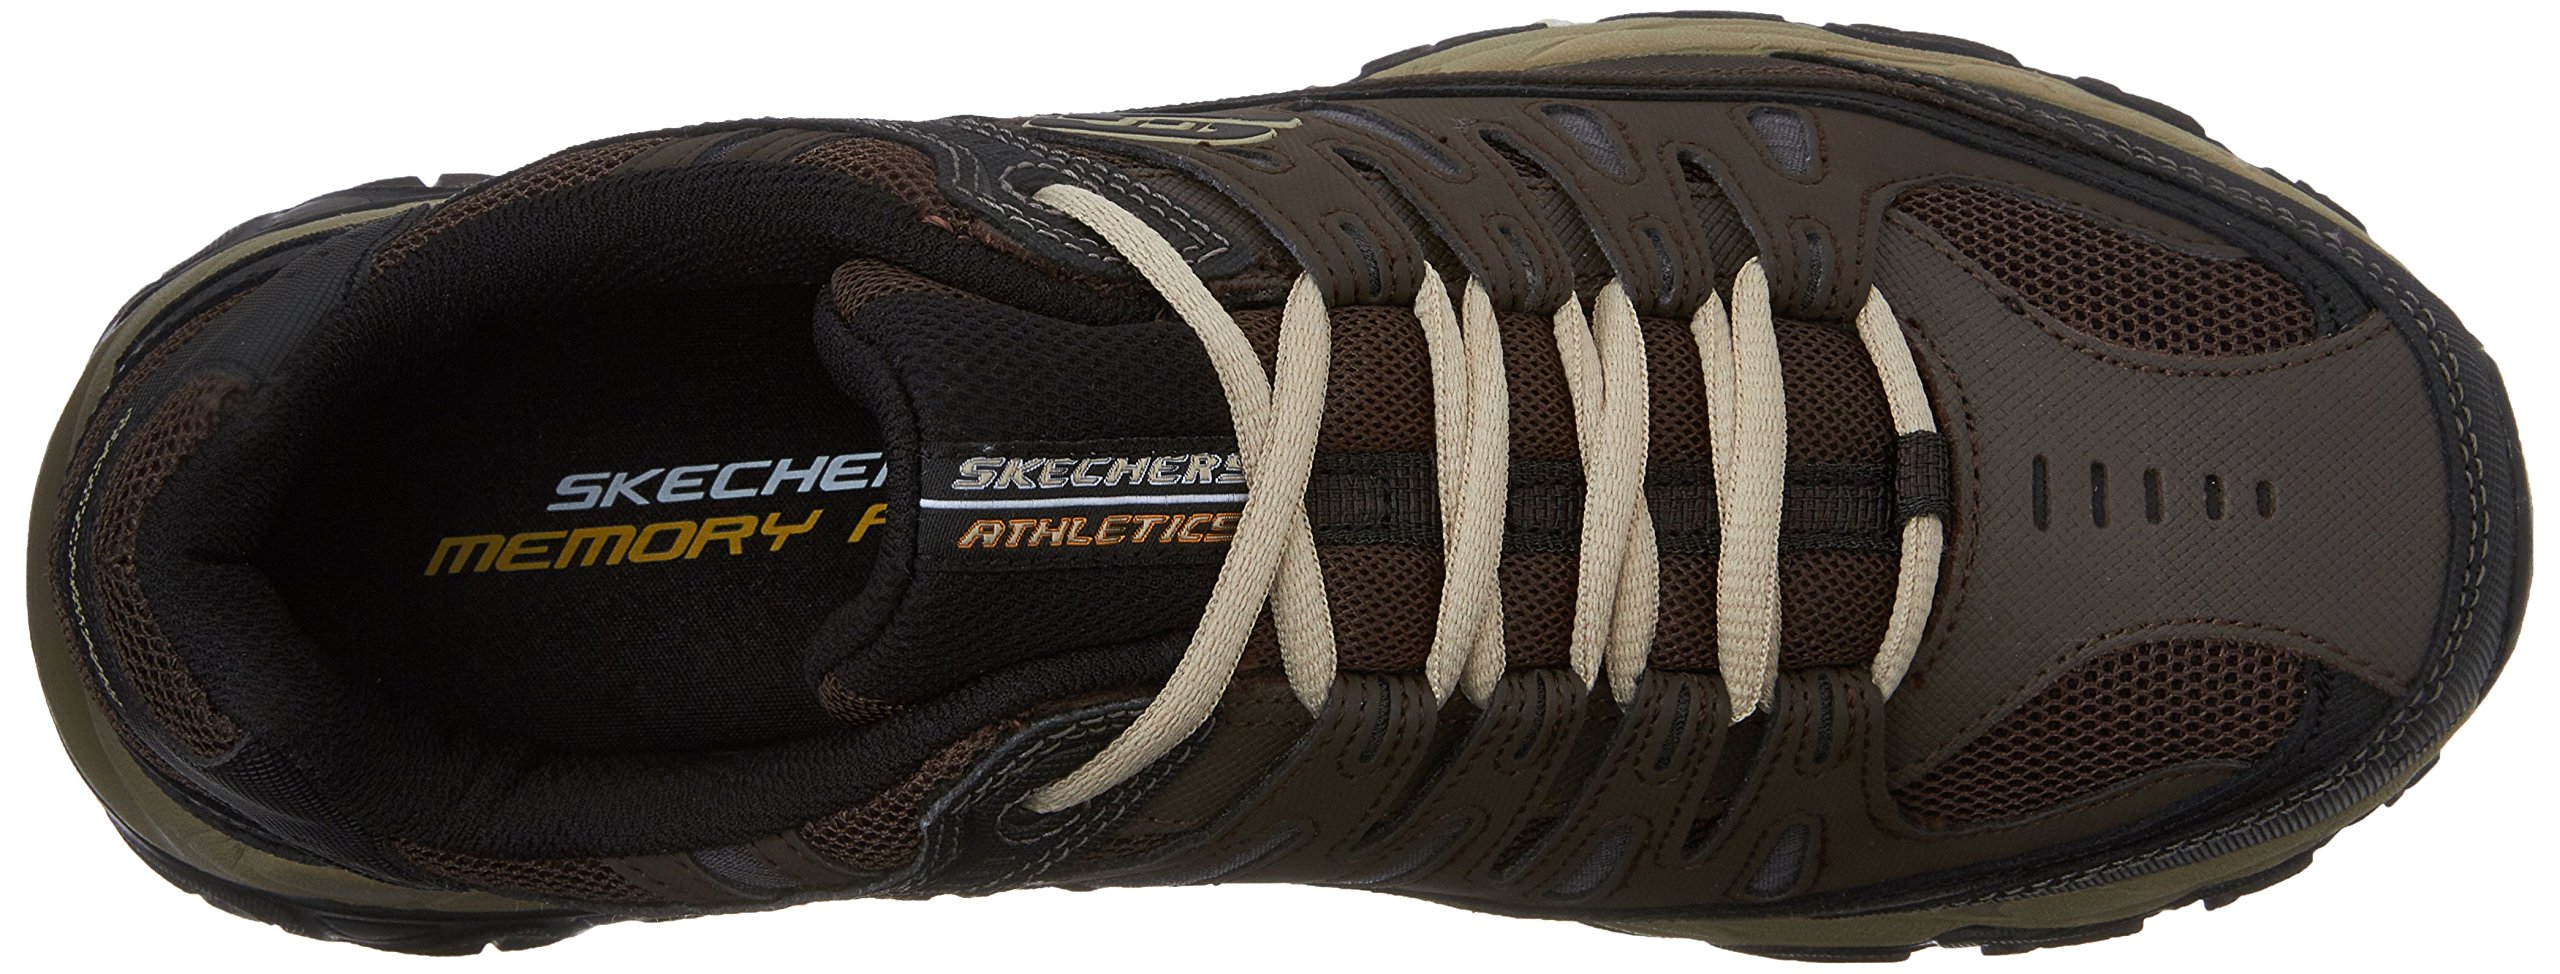 Skechers Men's Afterburn Memory-Foam Lace-up Sneaker